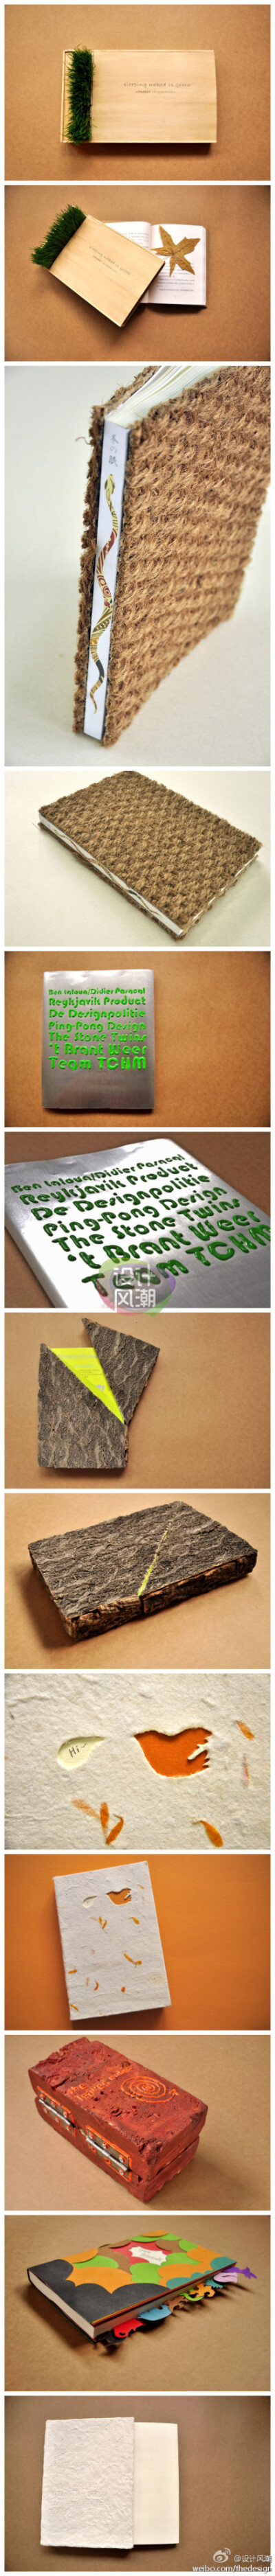 《槲寄生书店》书籍封面设计——南开大学08级艺术设计专业 高山，喜欢那几个原生态的树皮~哦不，书皮~